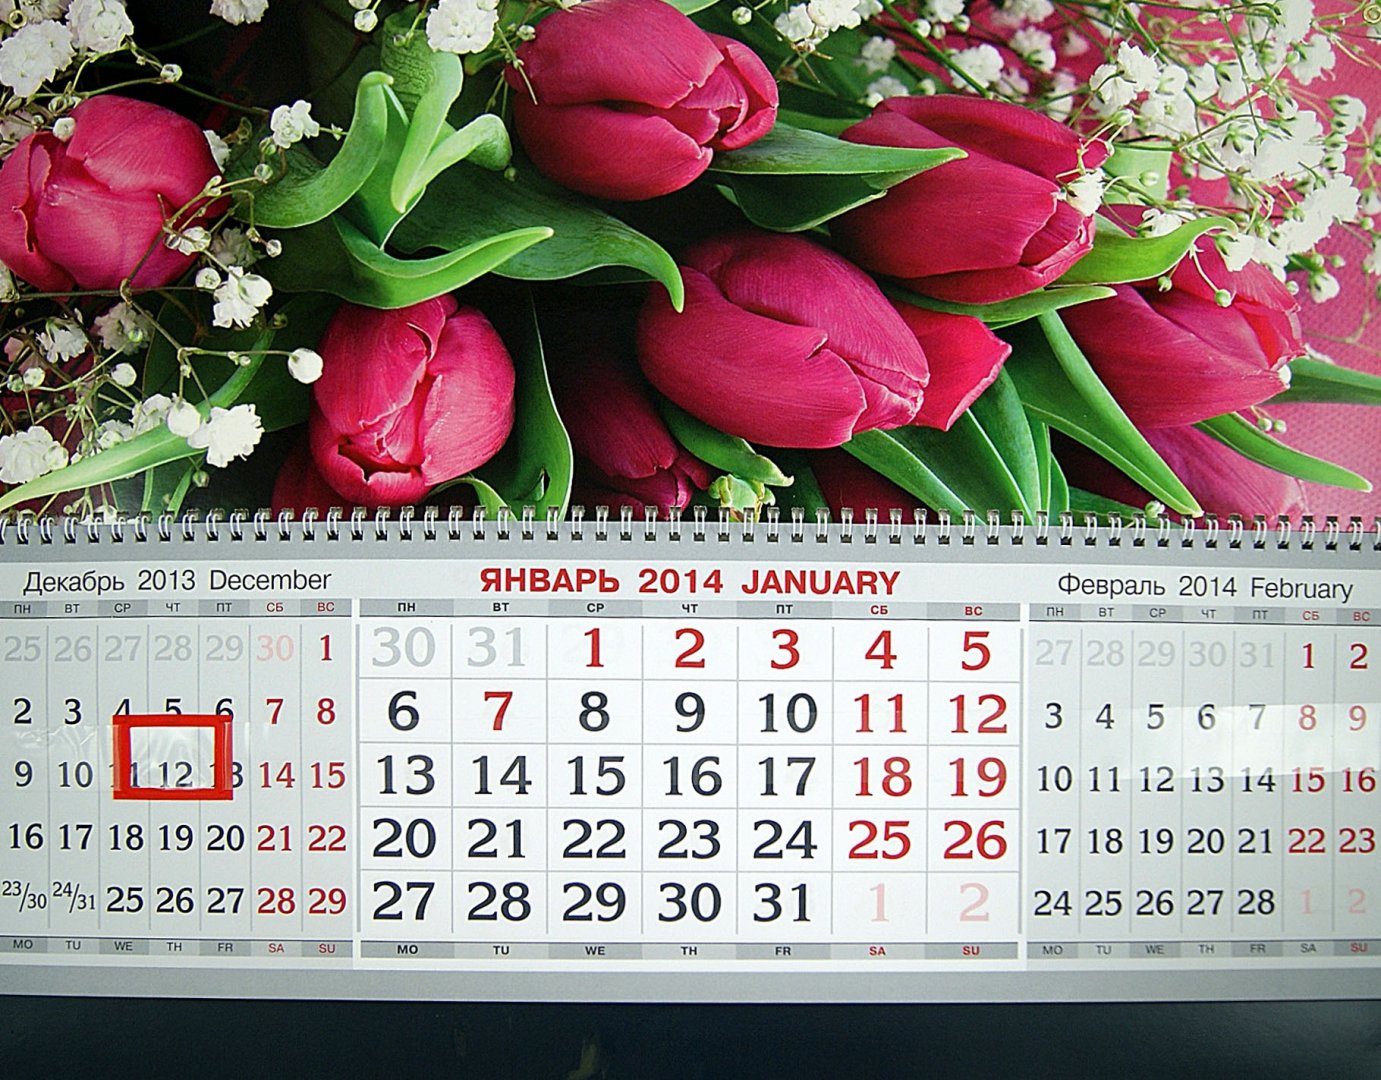 Иллюстрация 1 из 6 для Квартальный календарь на 2014 год "Тюльпаны" (31998) | Лабиринт - сувениры. Источник: Лабиринт